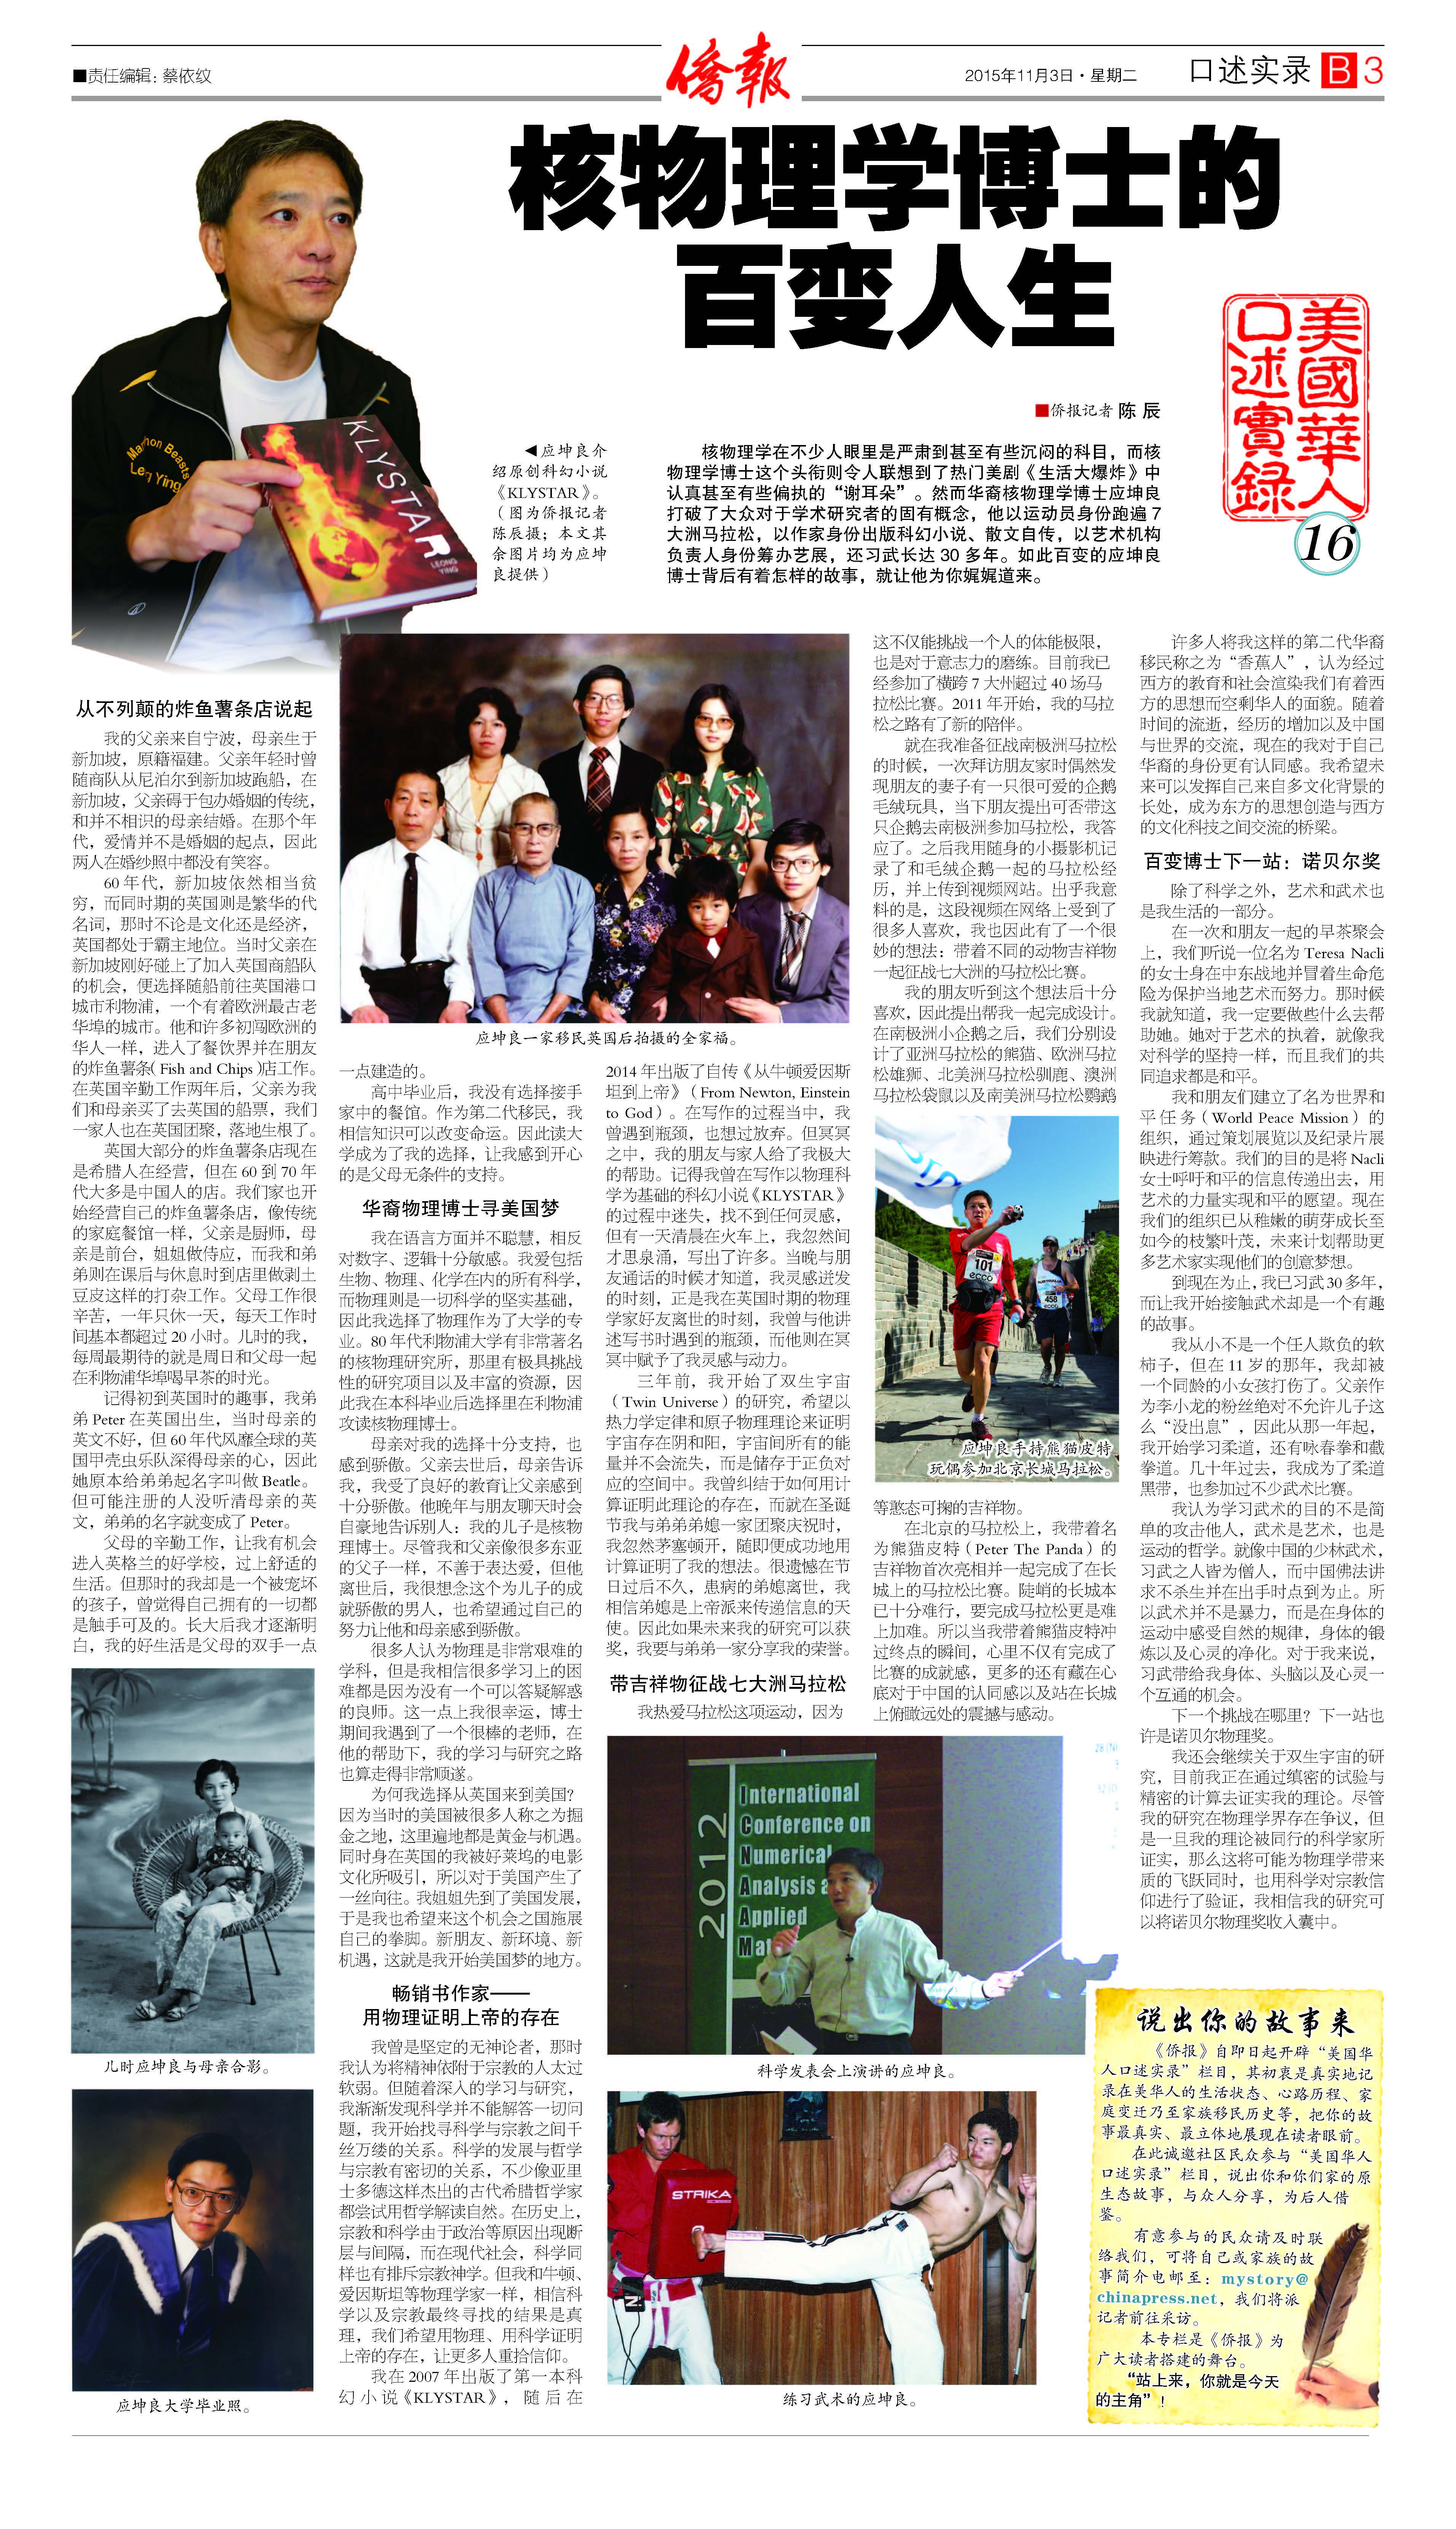 2015 China Press